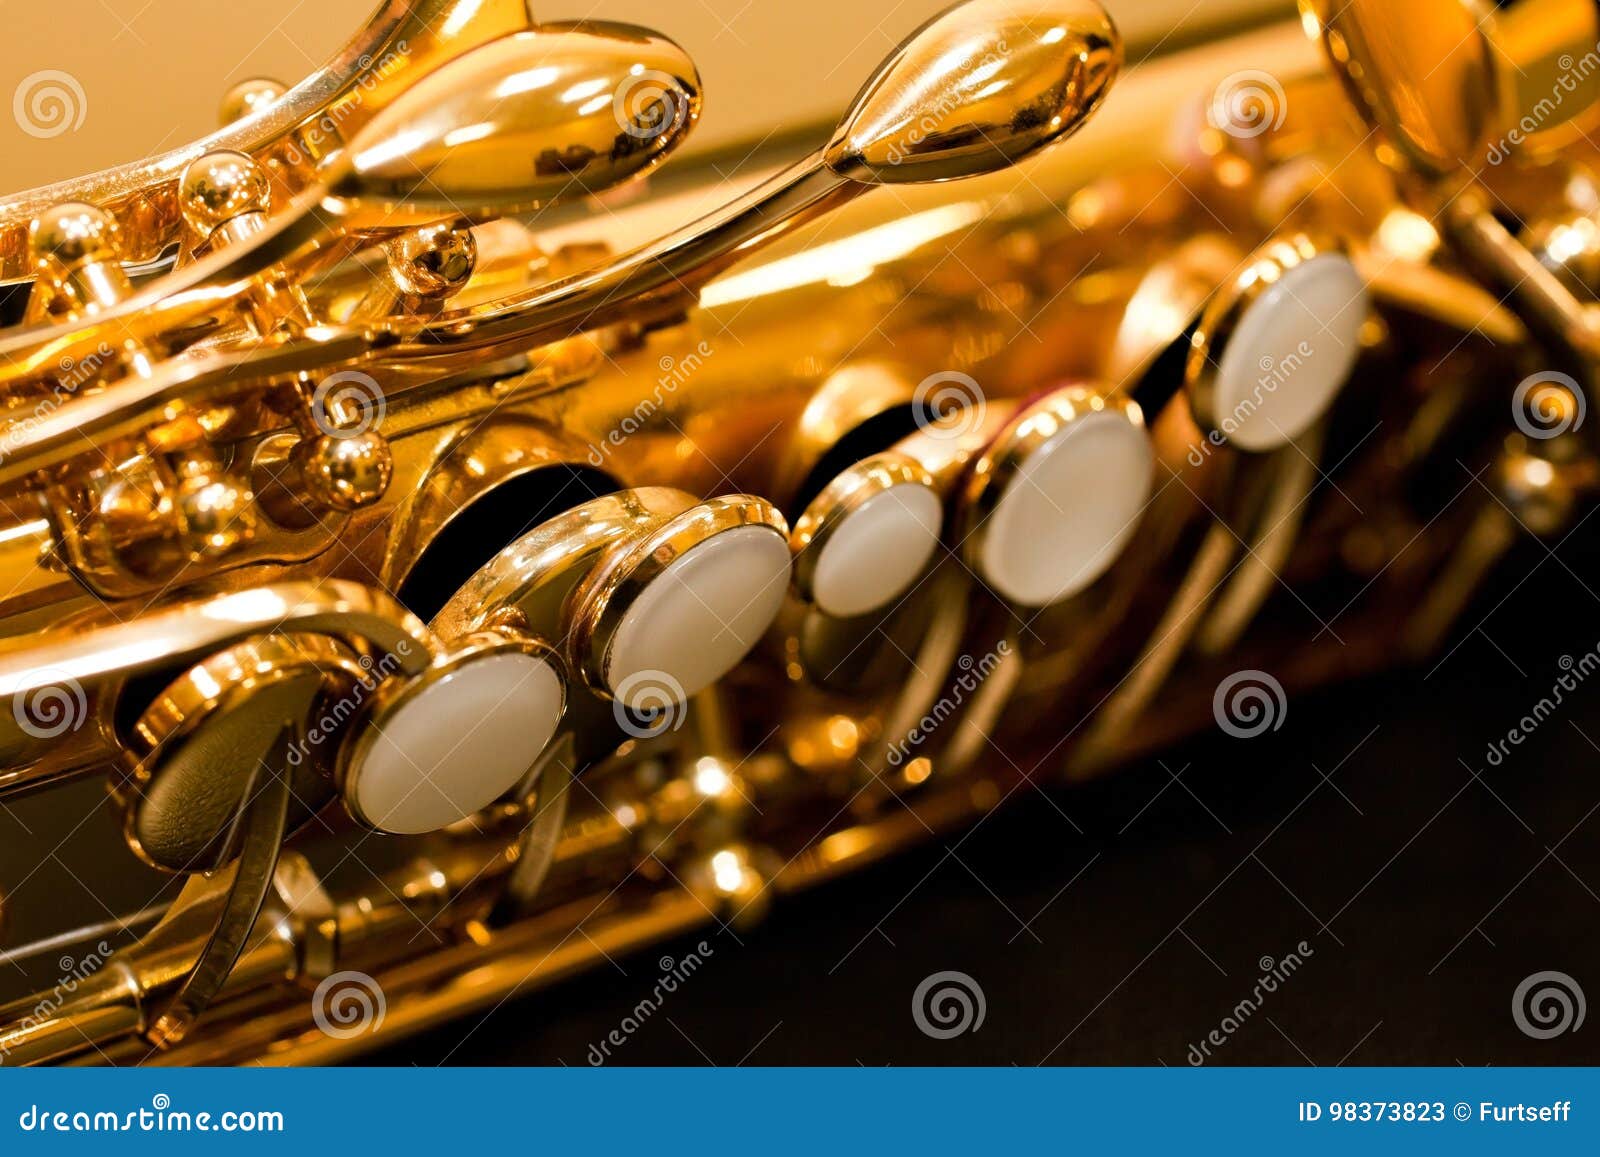 Клапан саксофона. Октавный клапан на саксофоне Альт. Двойной октавный клапан на саксофоне. Саксофон клапаны вид сверху. Саксофон клапан Ре 3 октавы.